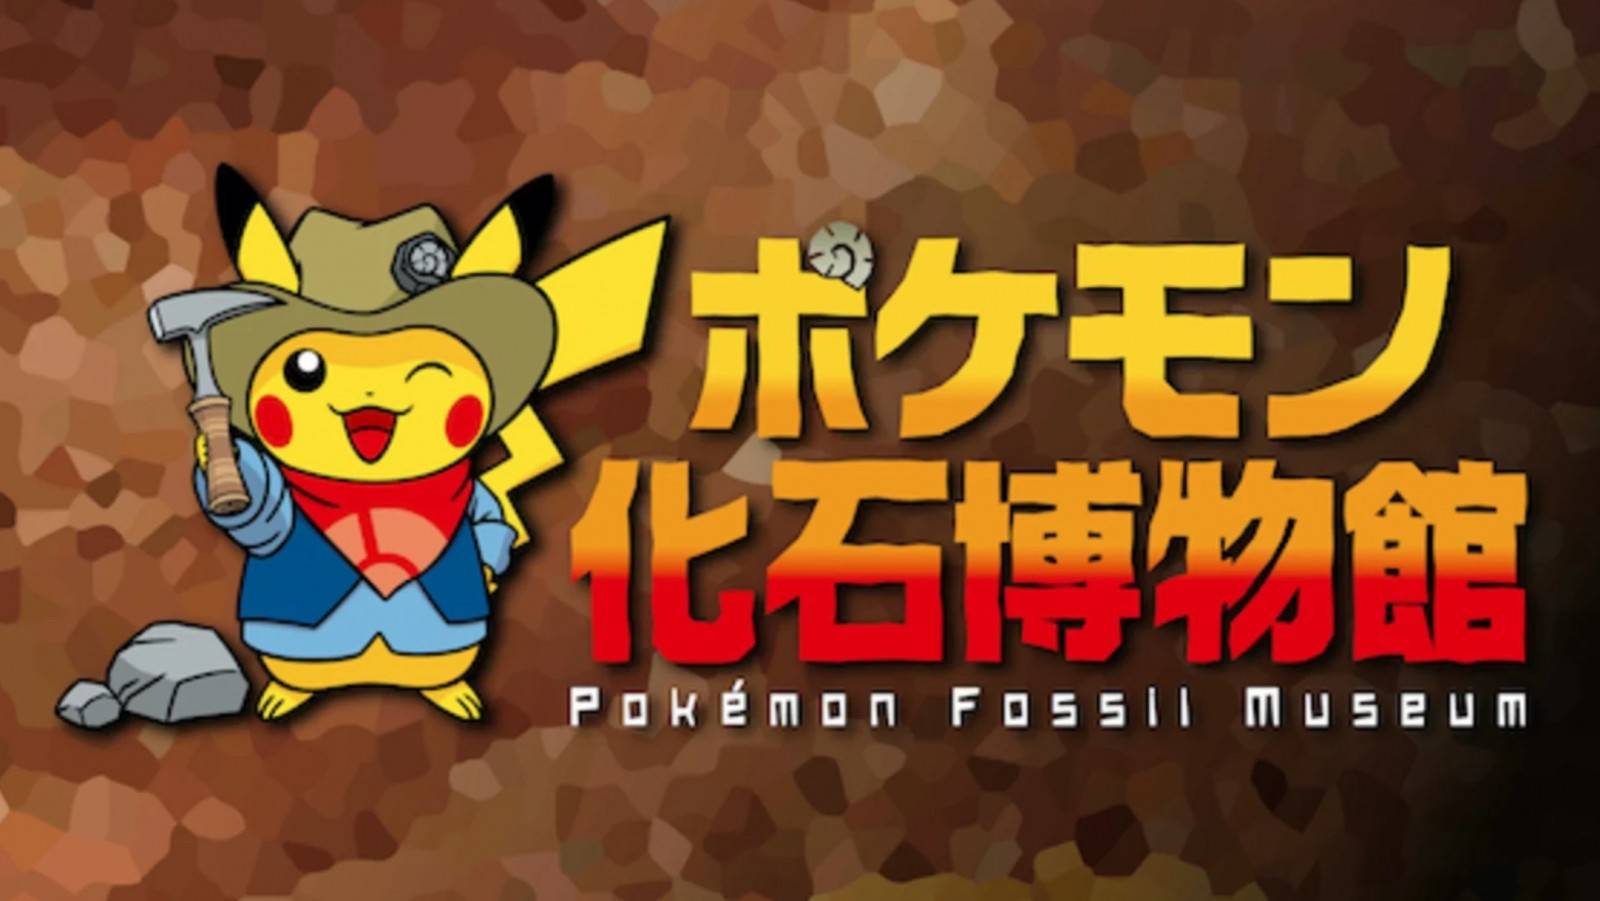 Pokémon: Japón Inaugura una exhibición temática de Fósiles 1